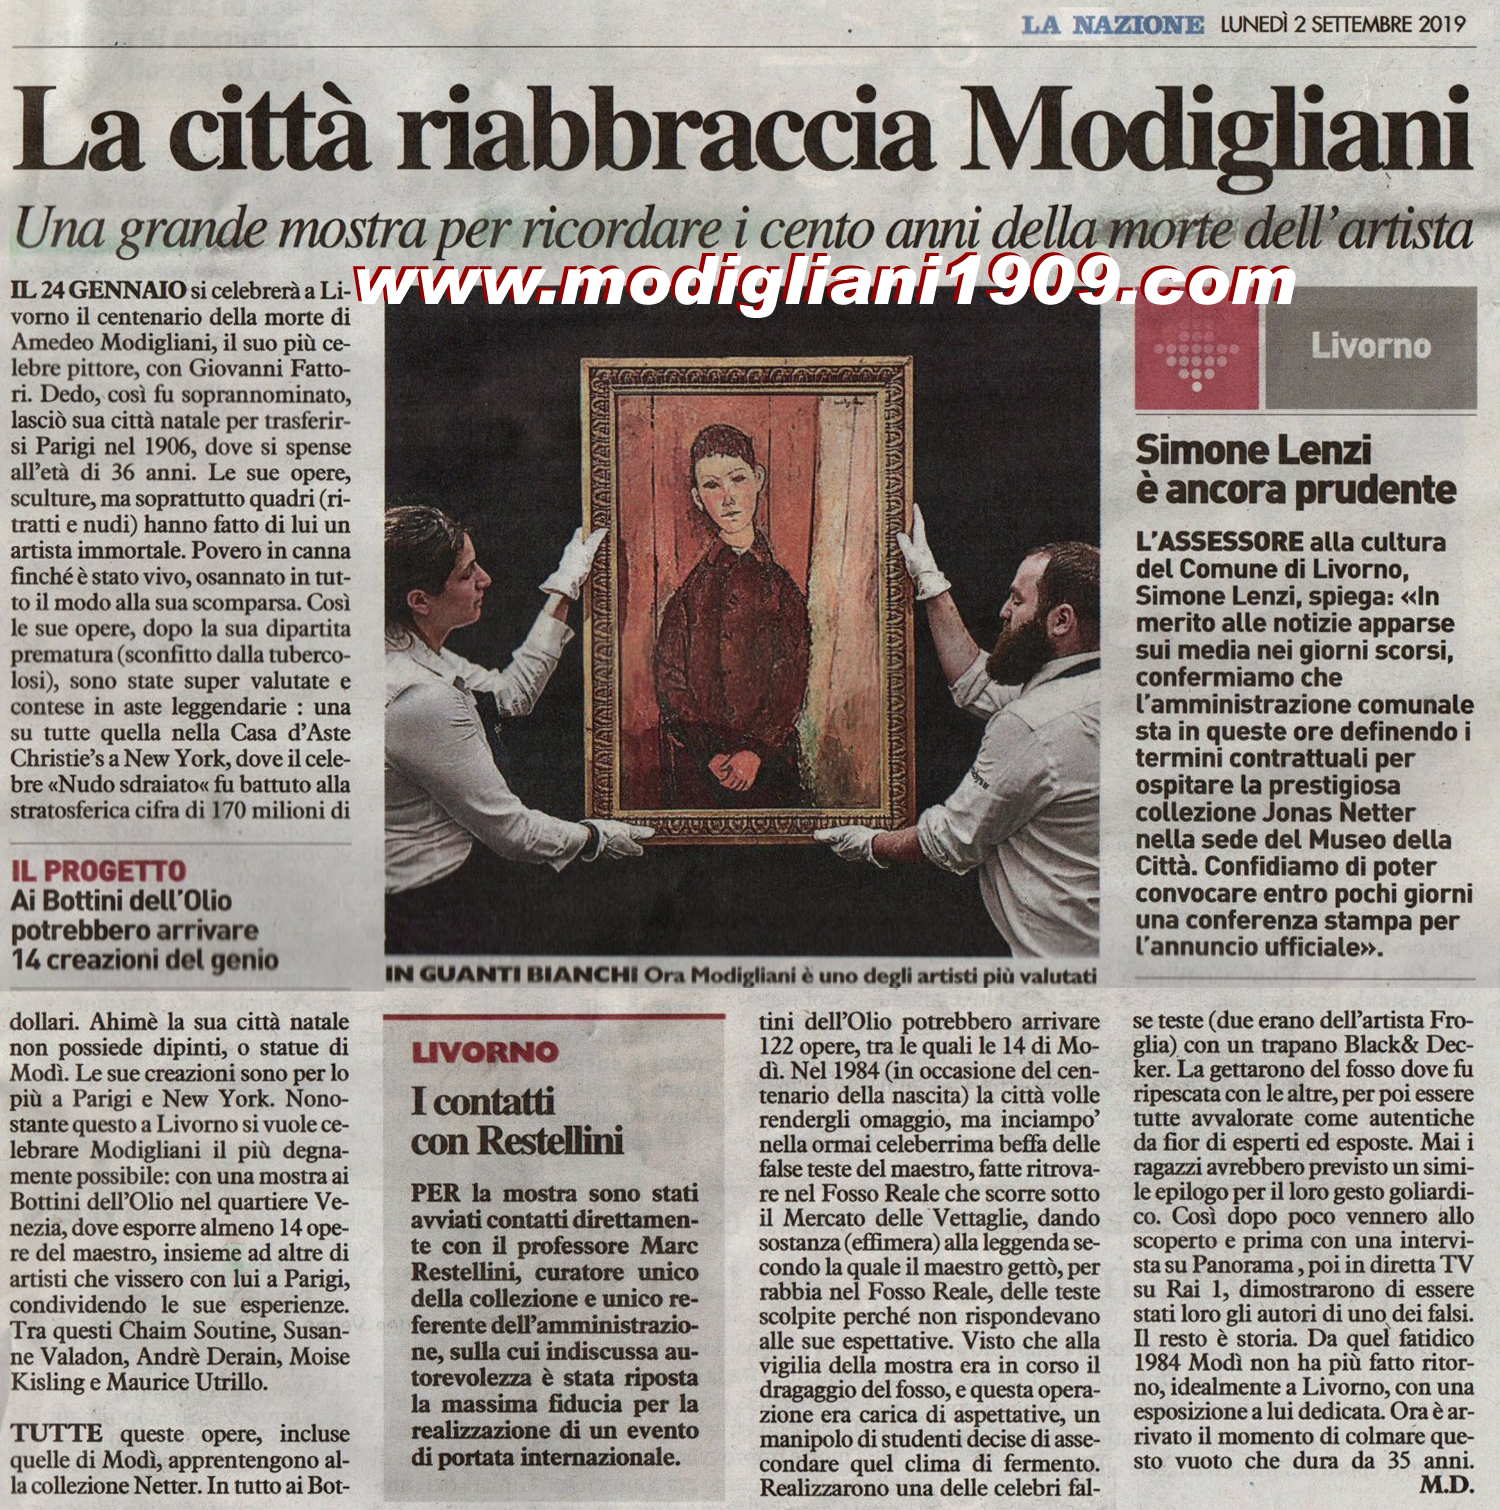 Livorno exhibition marks centenary of artist Modigliani's death